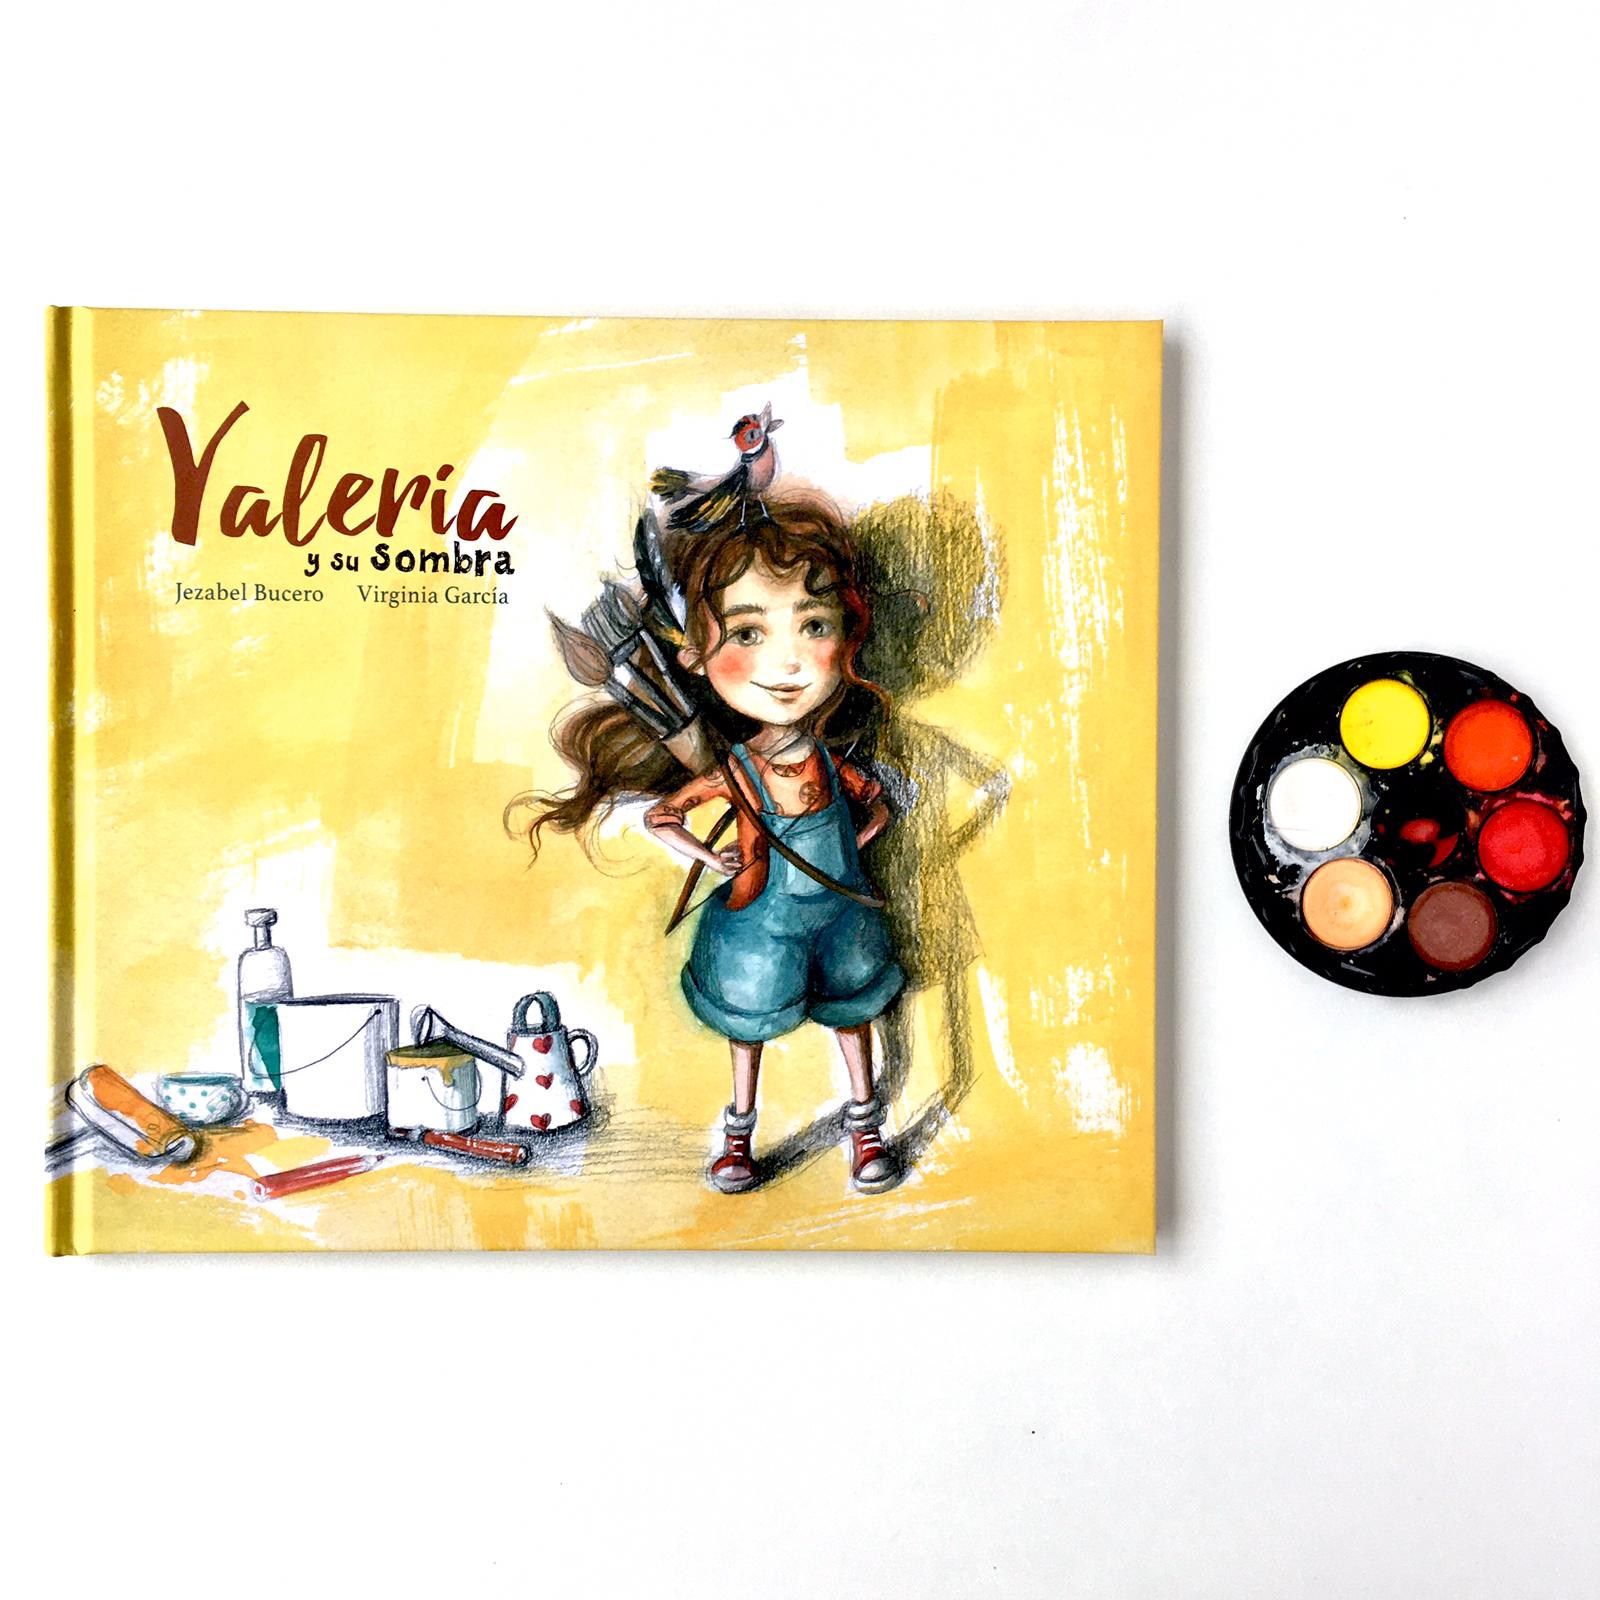 Valeria y su sombra